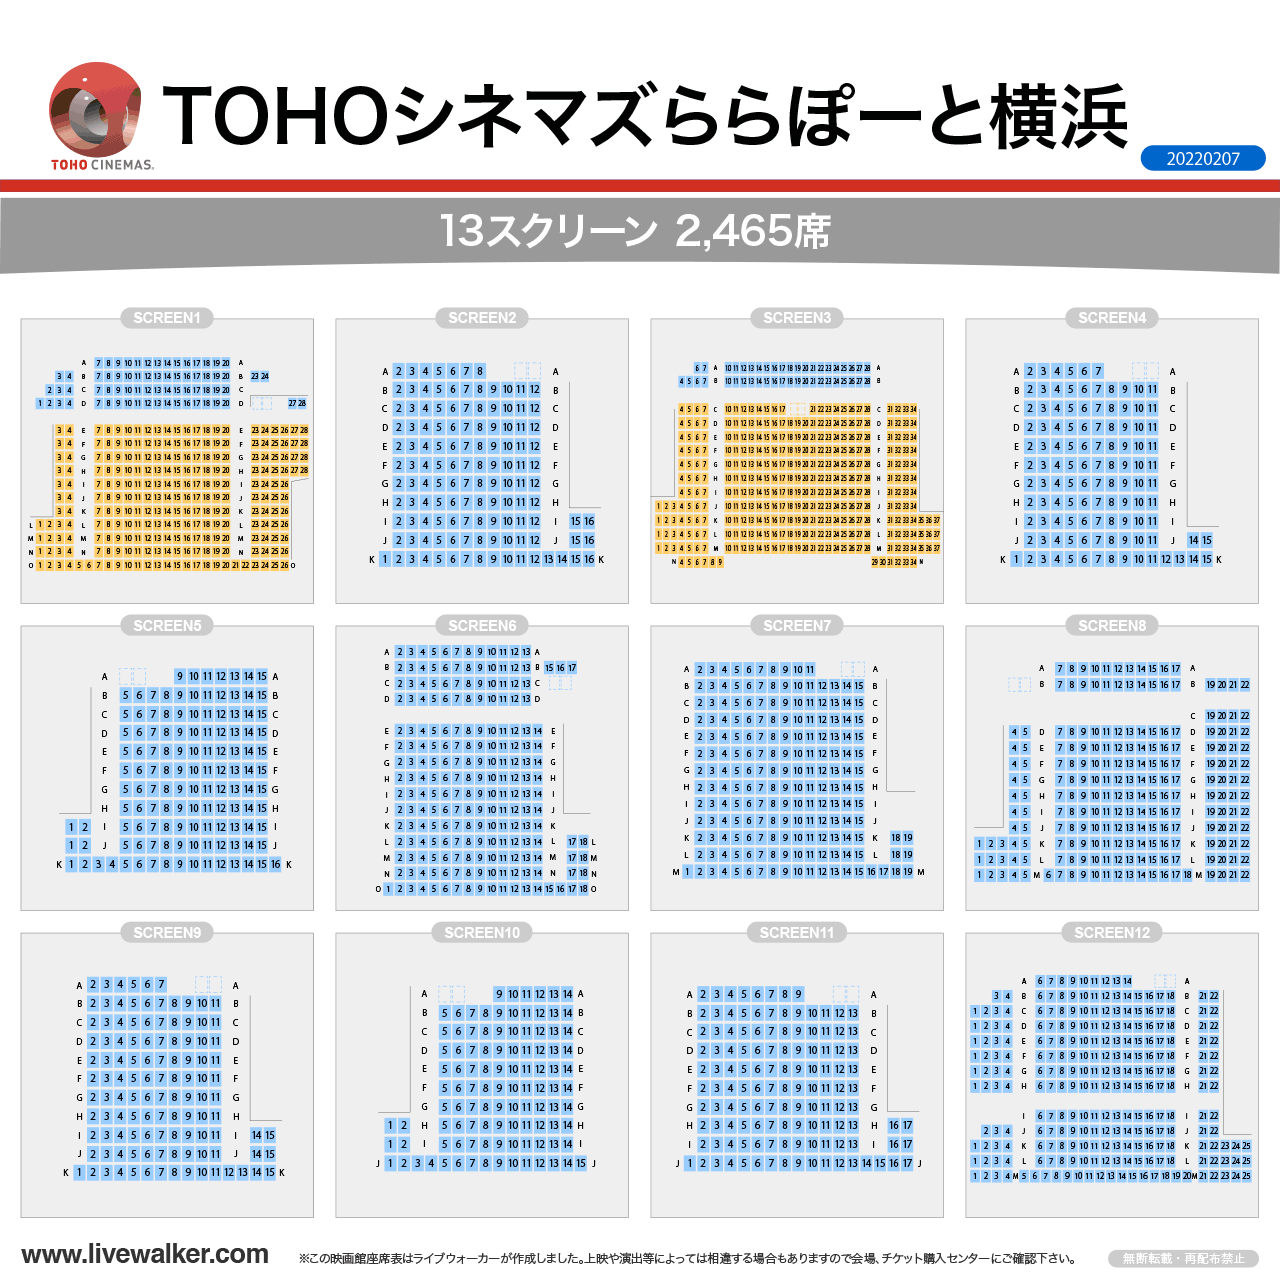 TOHOシネマズららぽーと横浜スクリーンの座席表